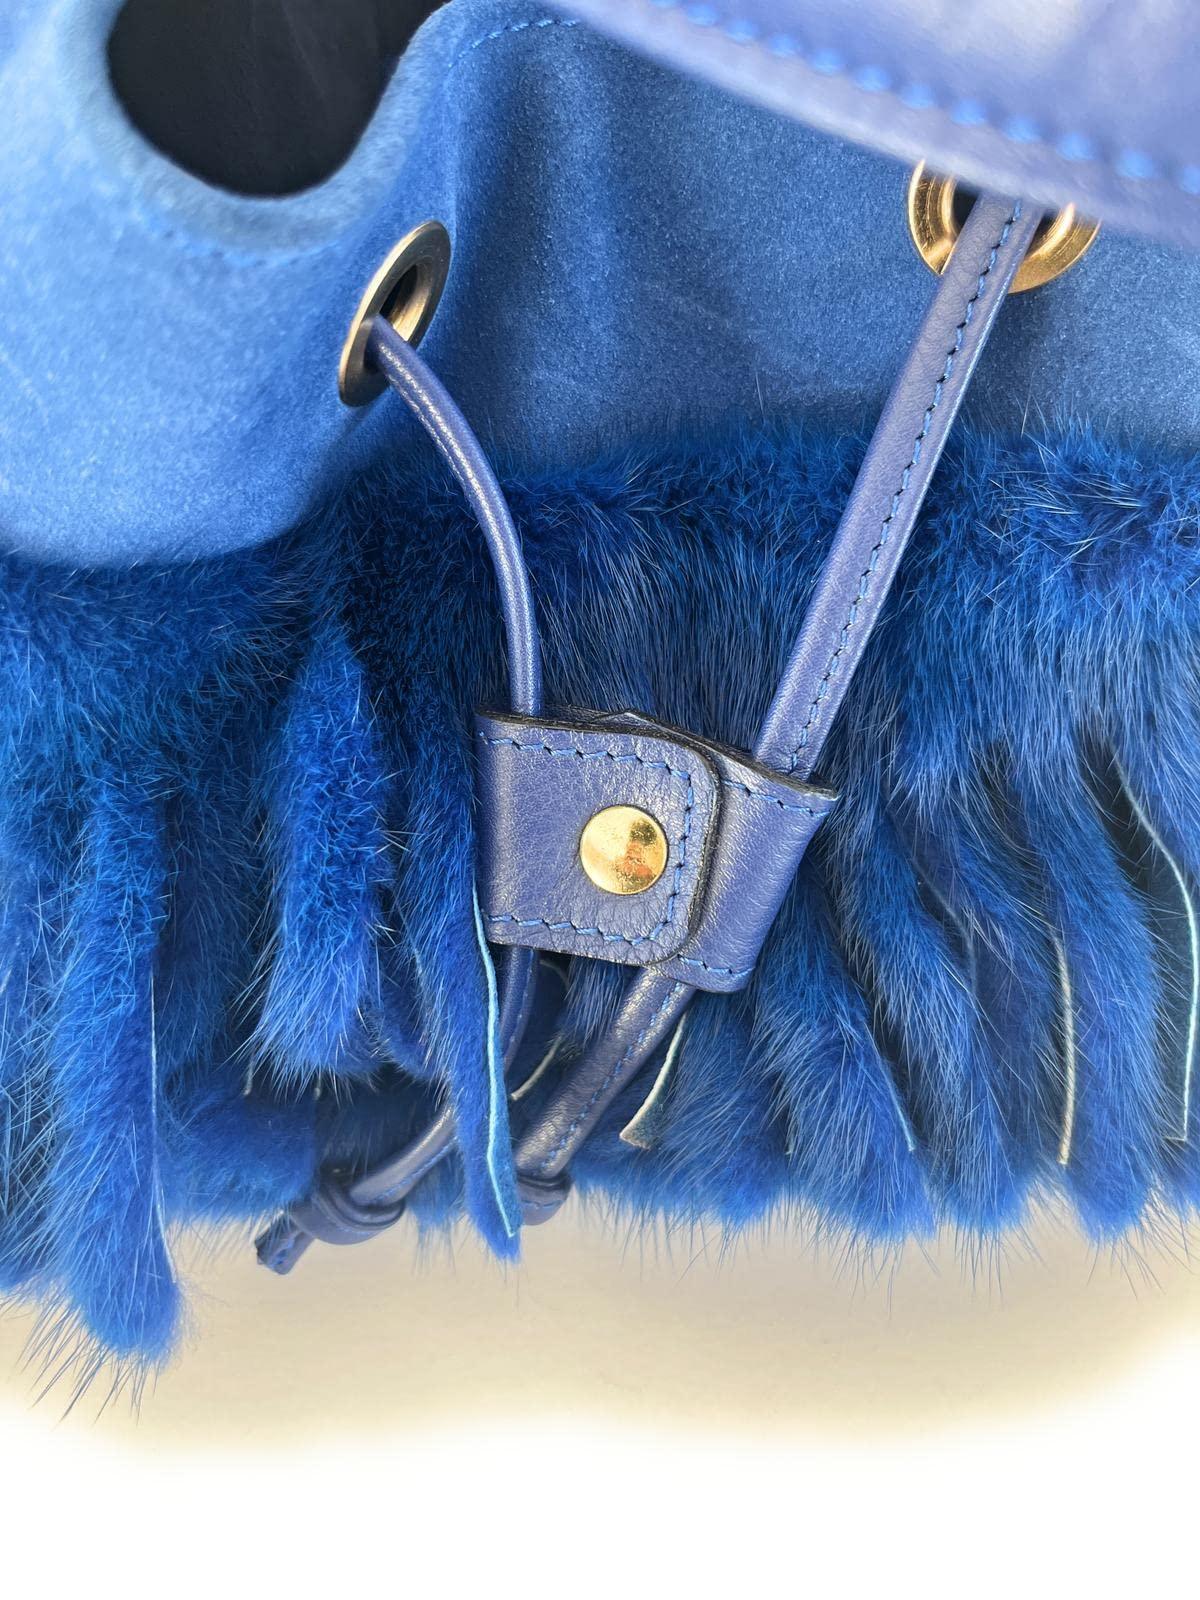 Borsa da Donna Blu in pelle di camoscio e pelliccia di visone - MARIKA DE PAOLA - HOME DECOR